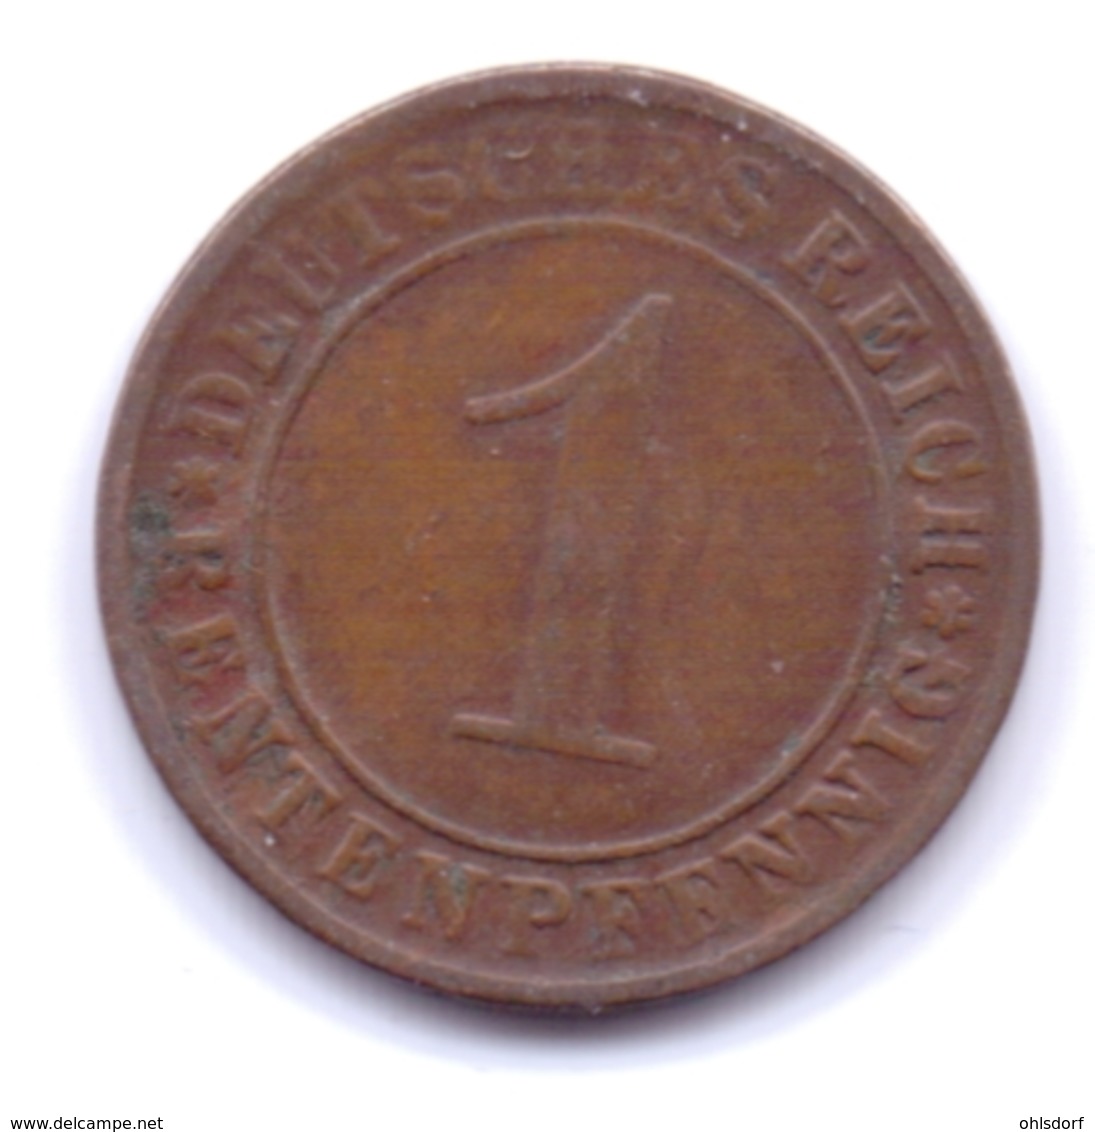 DEUTSCHES REICH 1923 E: 1 Rentenpfennig, KM 30 - 1 Rentenpfennig & 1 Reichspfennig